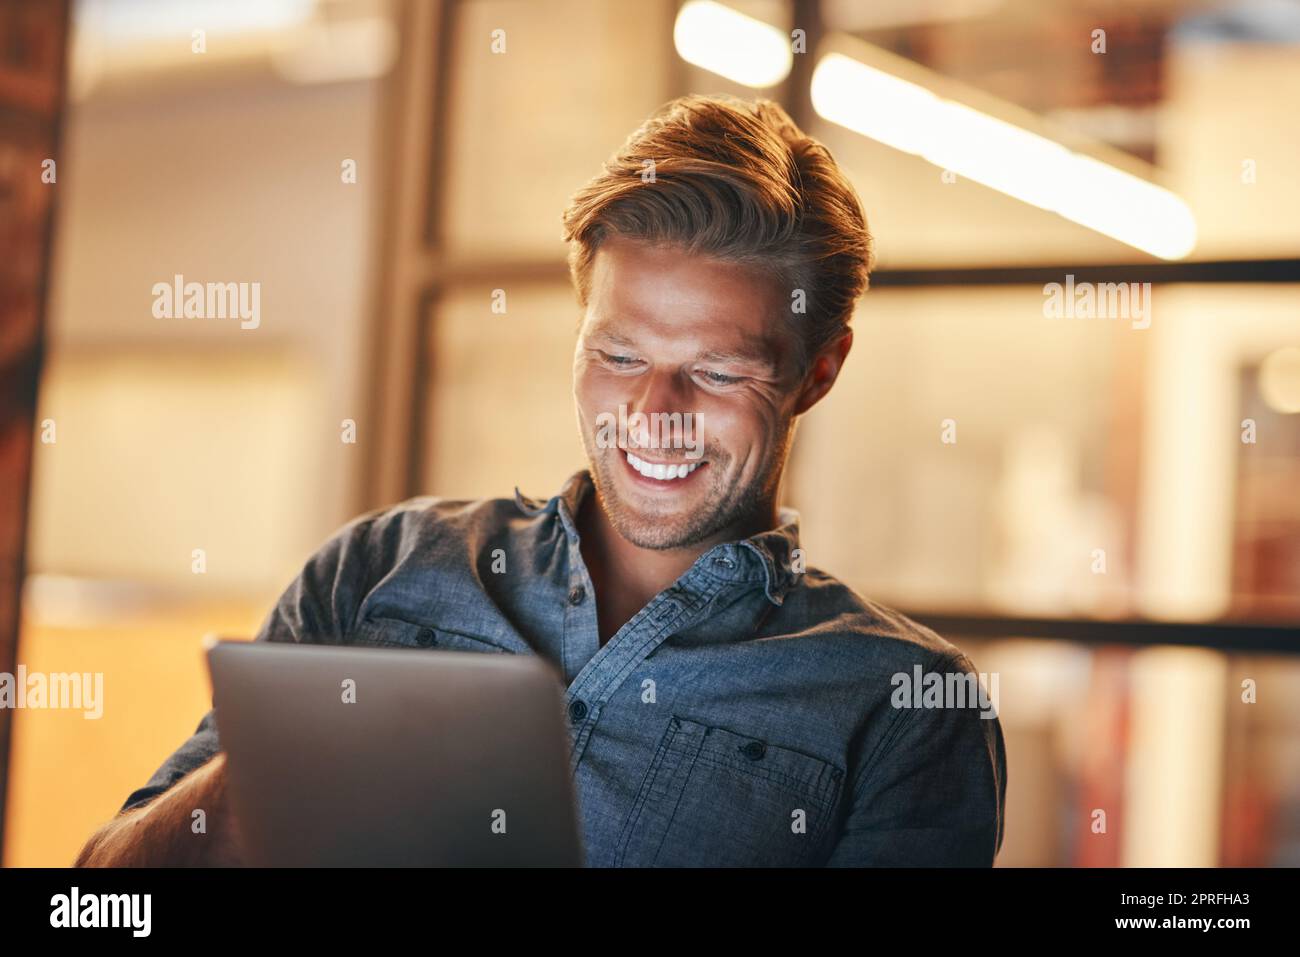 Digitalisieren Sie Aufgaben, um Zeit zu sparen. Ein hübscher junger Mann, der spät in seinem Büro arbeitet. Stockfoto